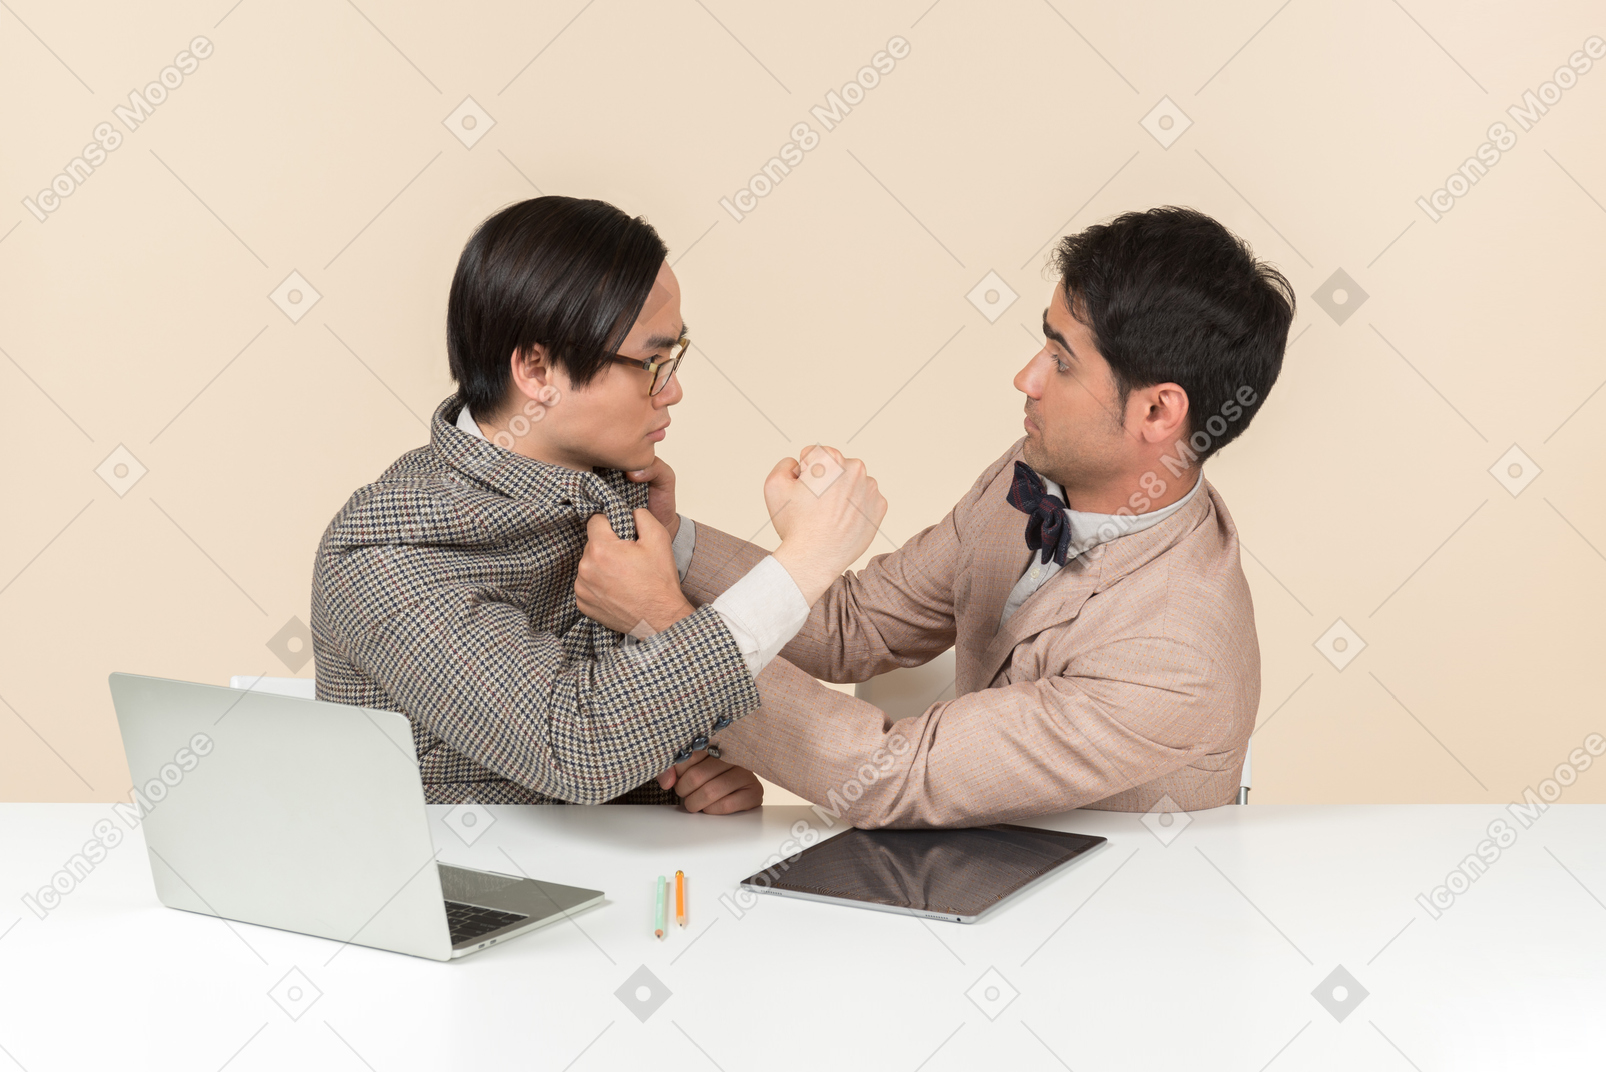 Deux jeunes nerds assis à la table et se frappant le visage